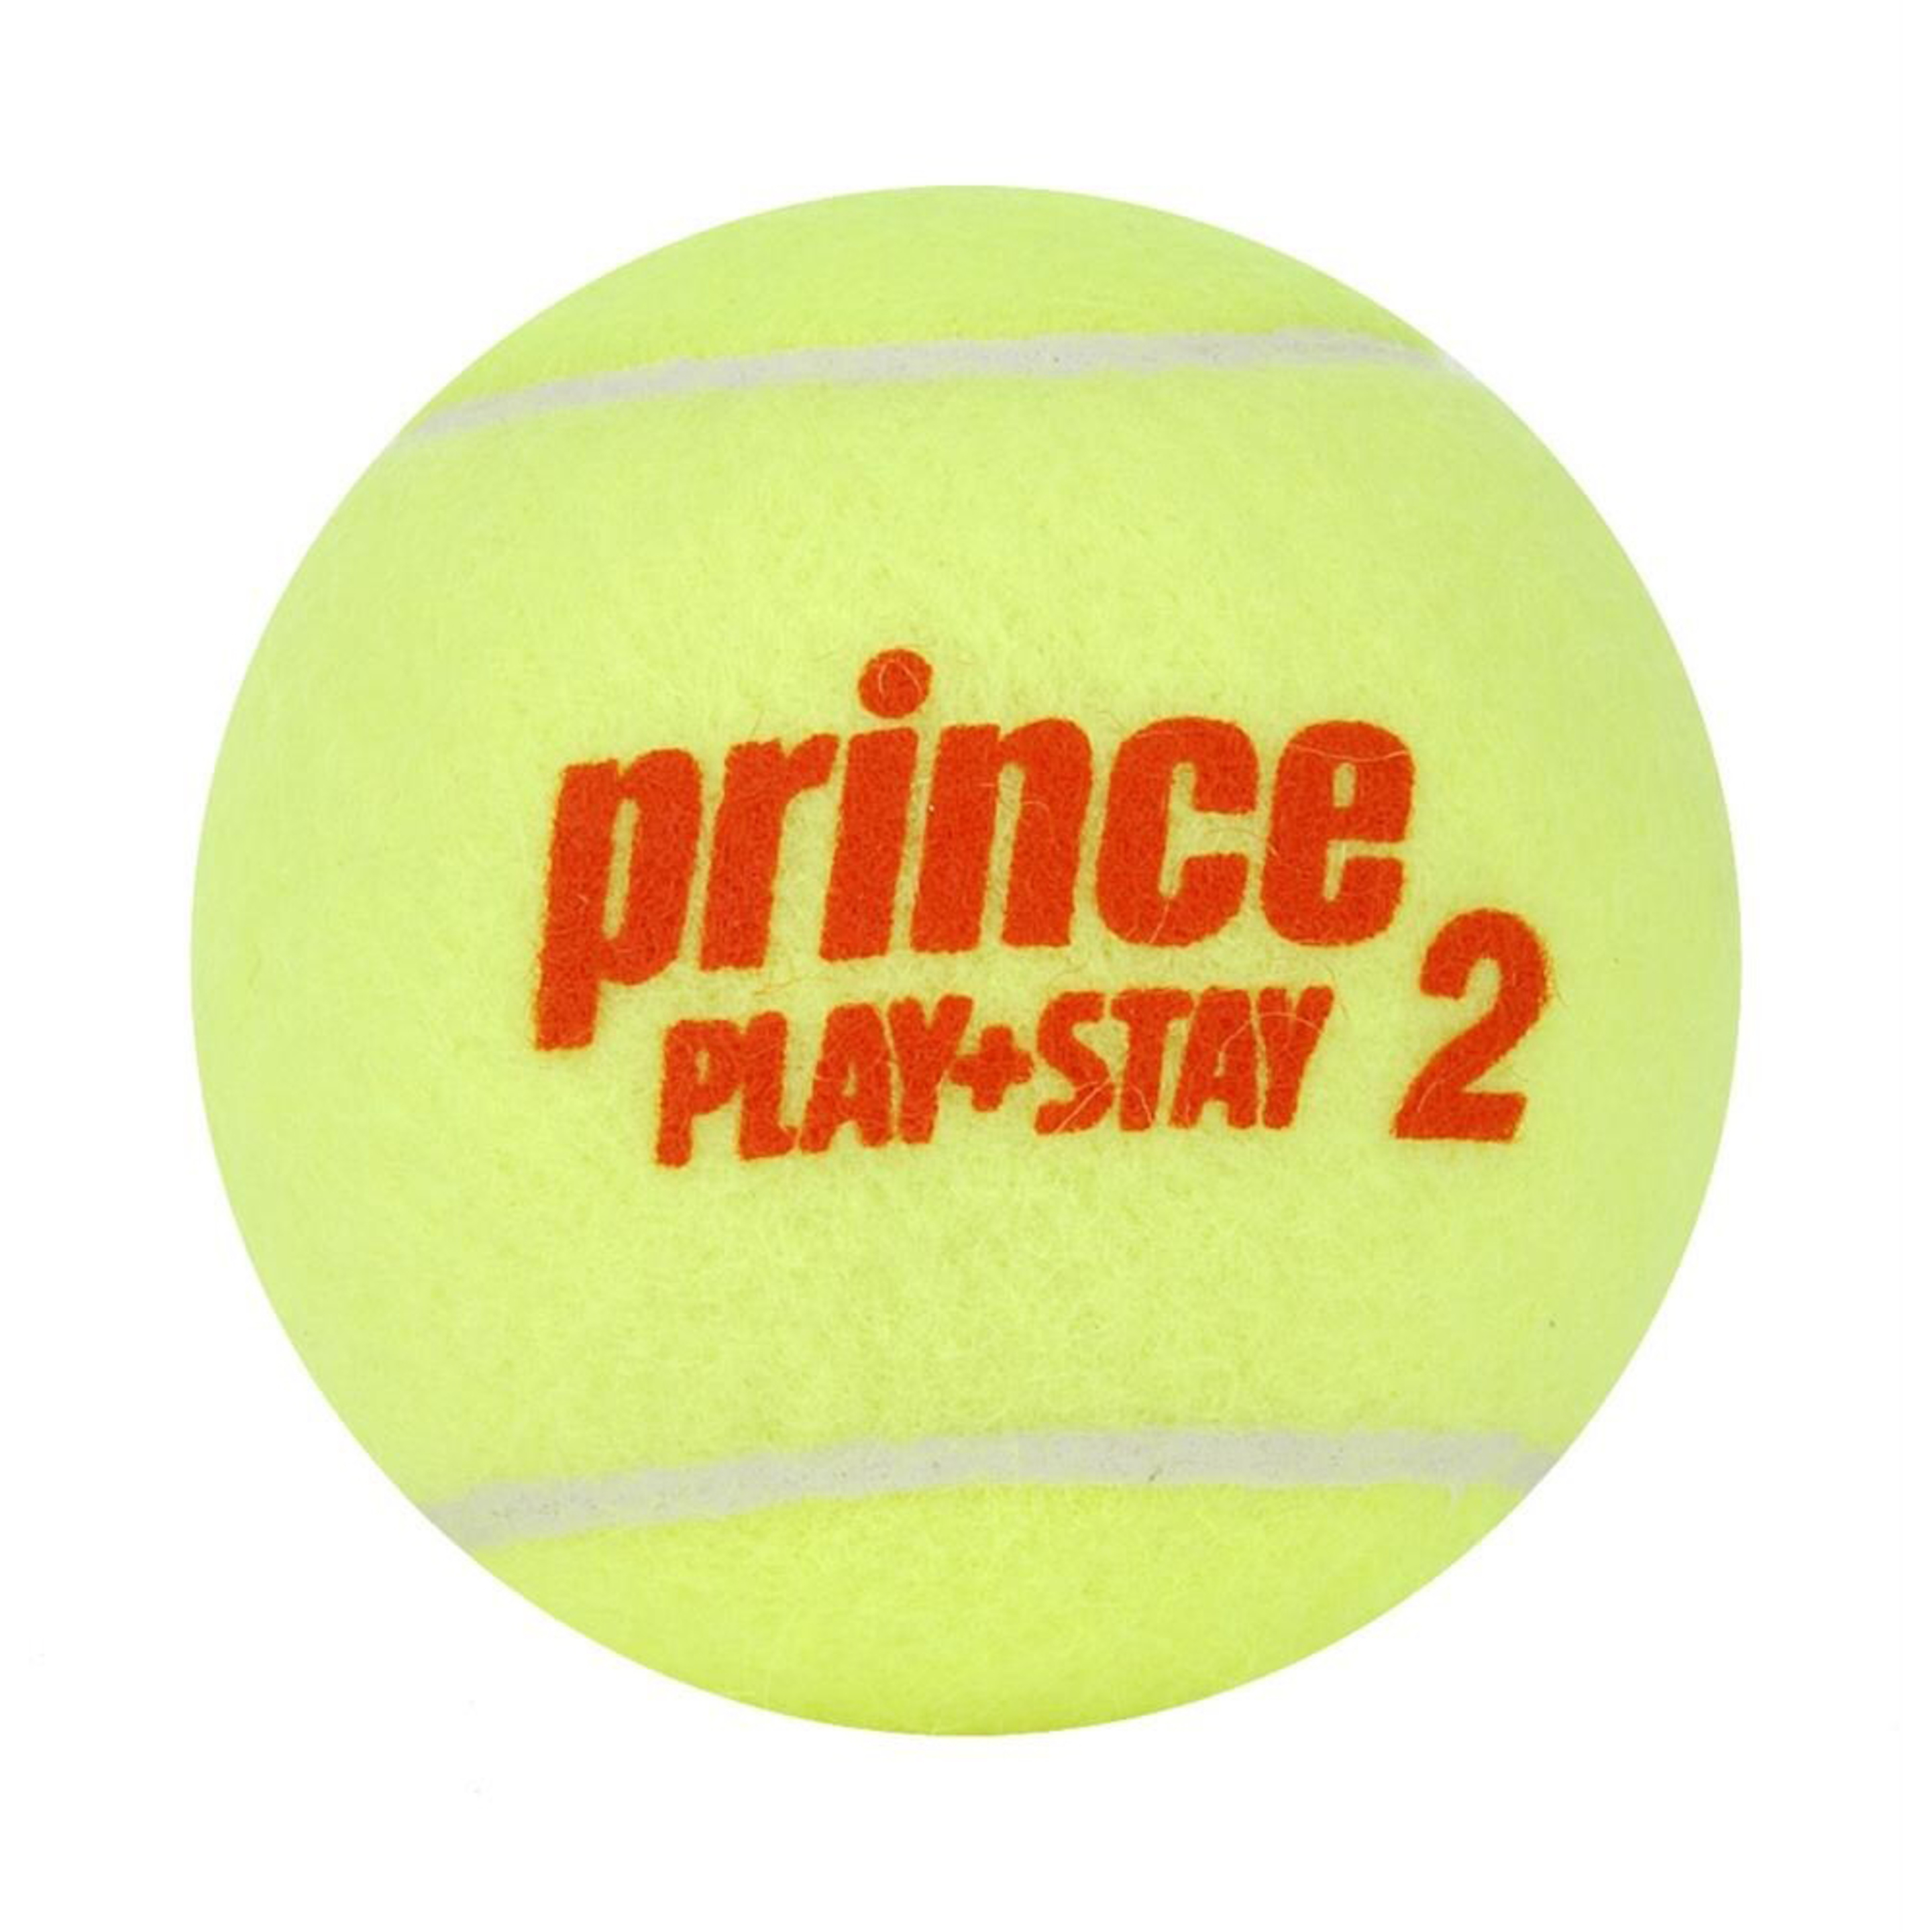 Caja De 24 Botes De 3 Bolas De Tenis Prince Play & Stay Stage 2